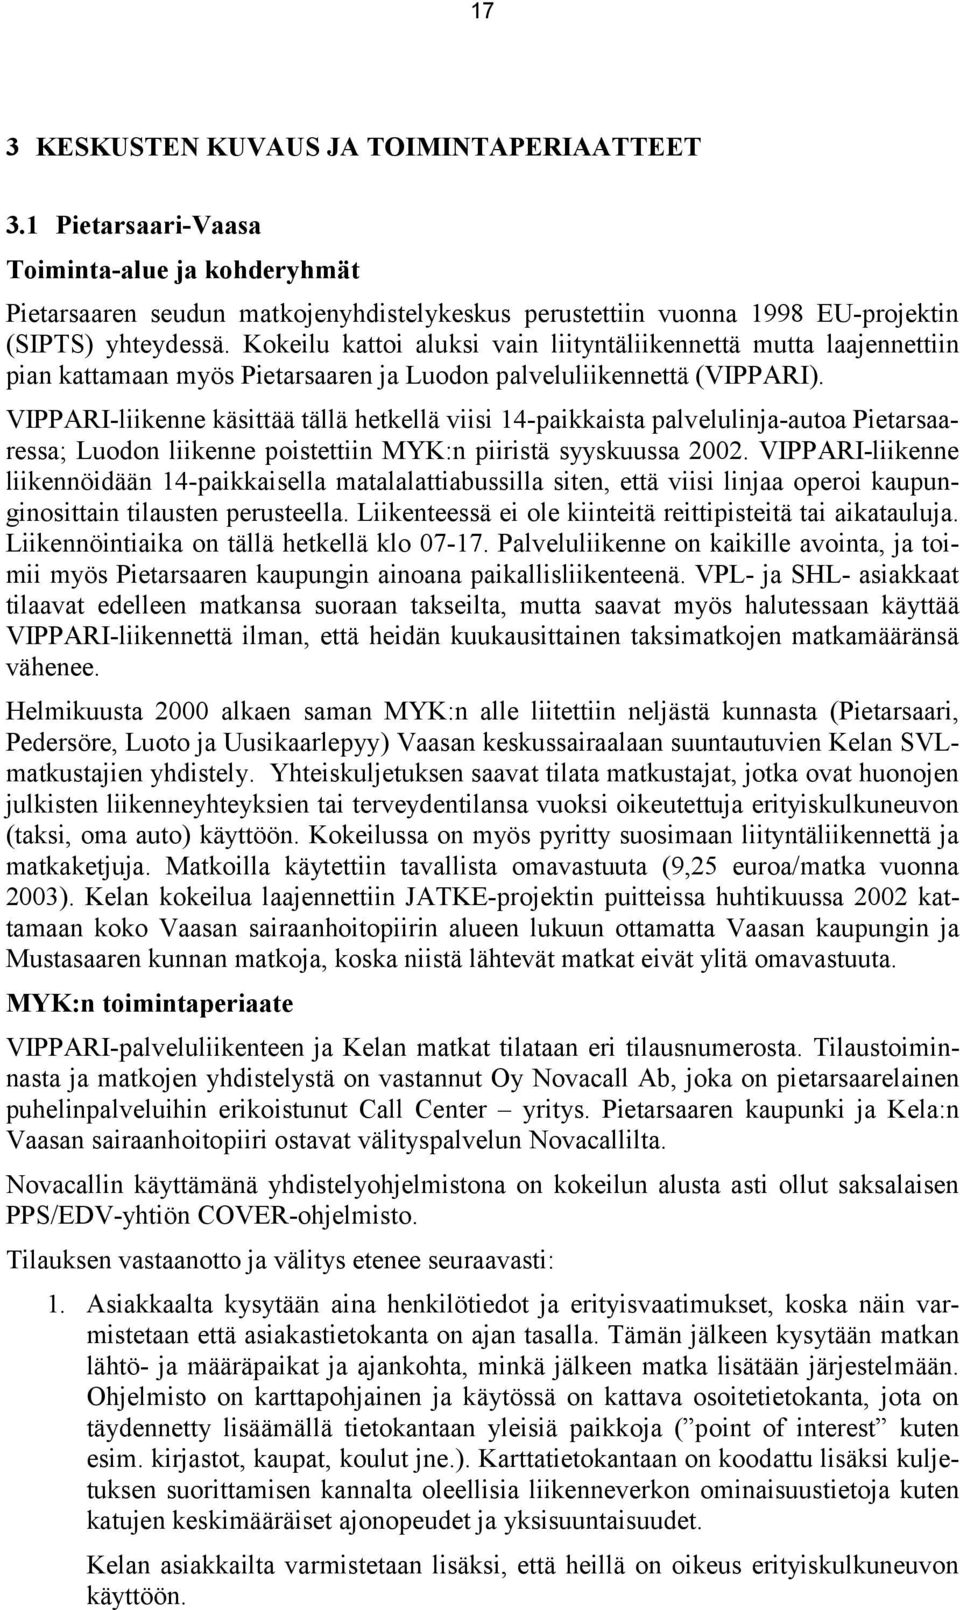 VIPPARI-liikenne käsittää tällä hetkellä viisi 14-paikkaista palvelulinja-autoa Pietarsaaressa; Luodon liikenne poistettiin MYK:n piiristä syyskuussa 2002.